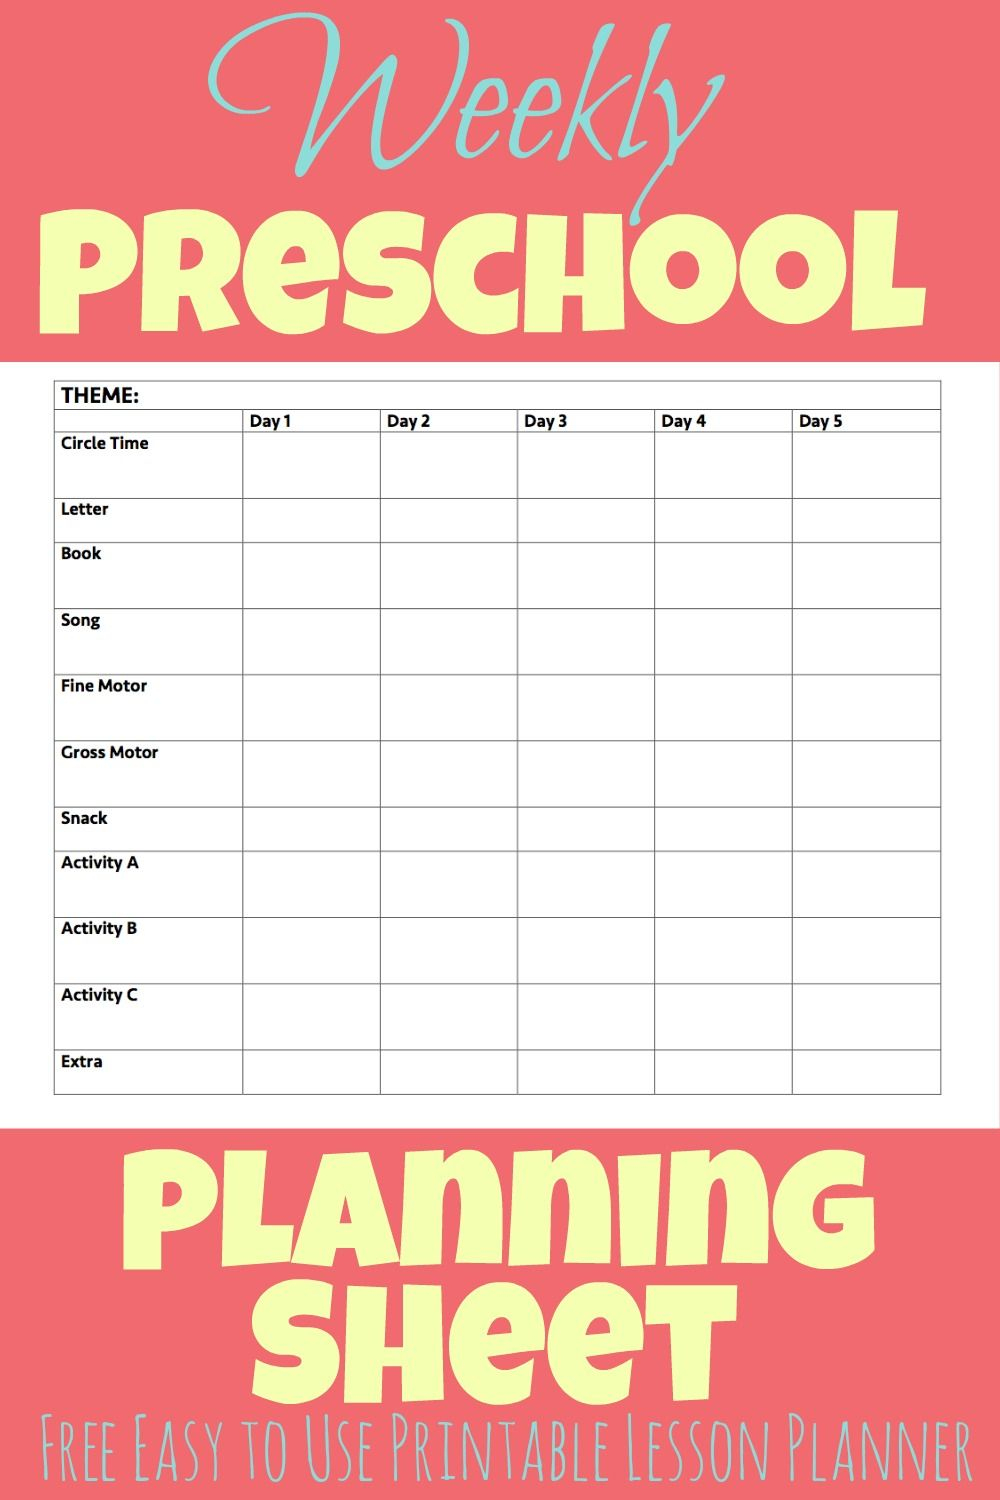 This Free Printable Preschool Week Lesson Planner Makes Planning - Free Printable Preschool Lesson Plans